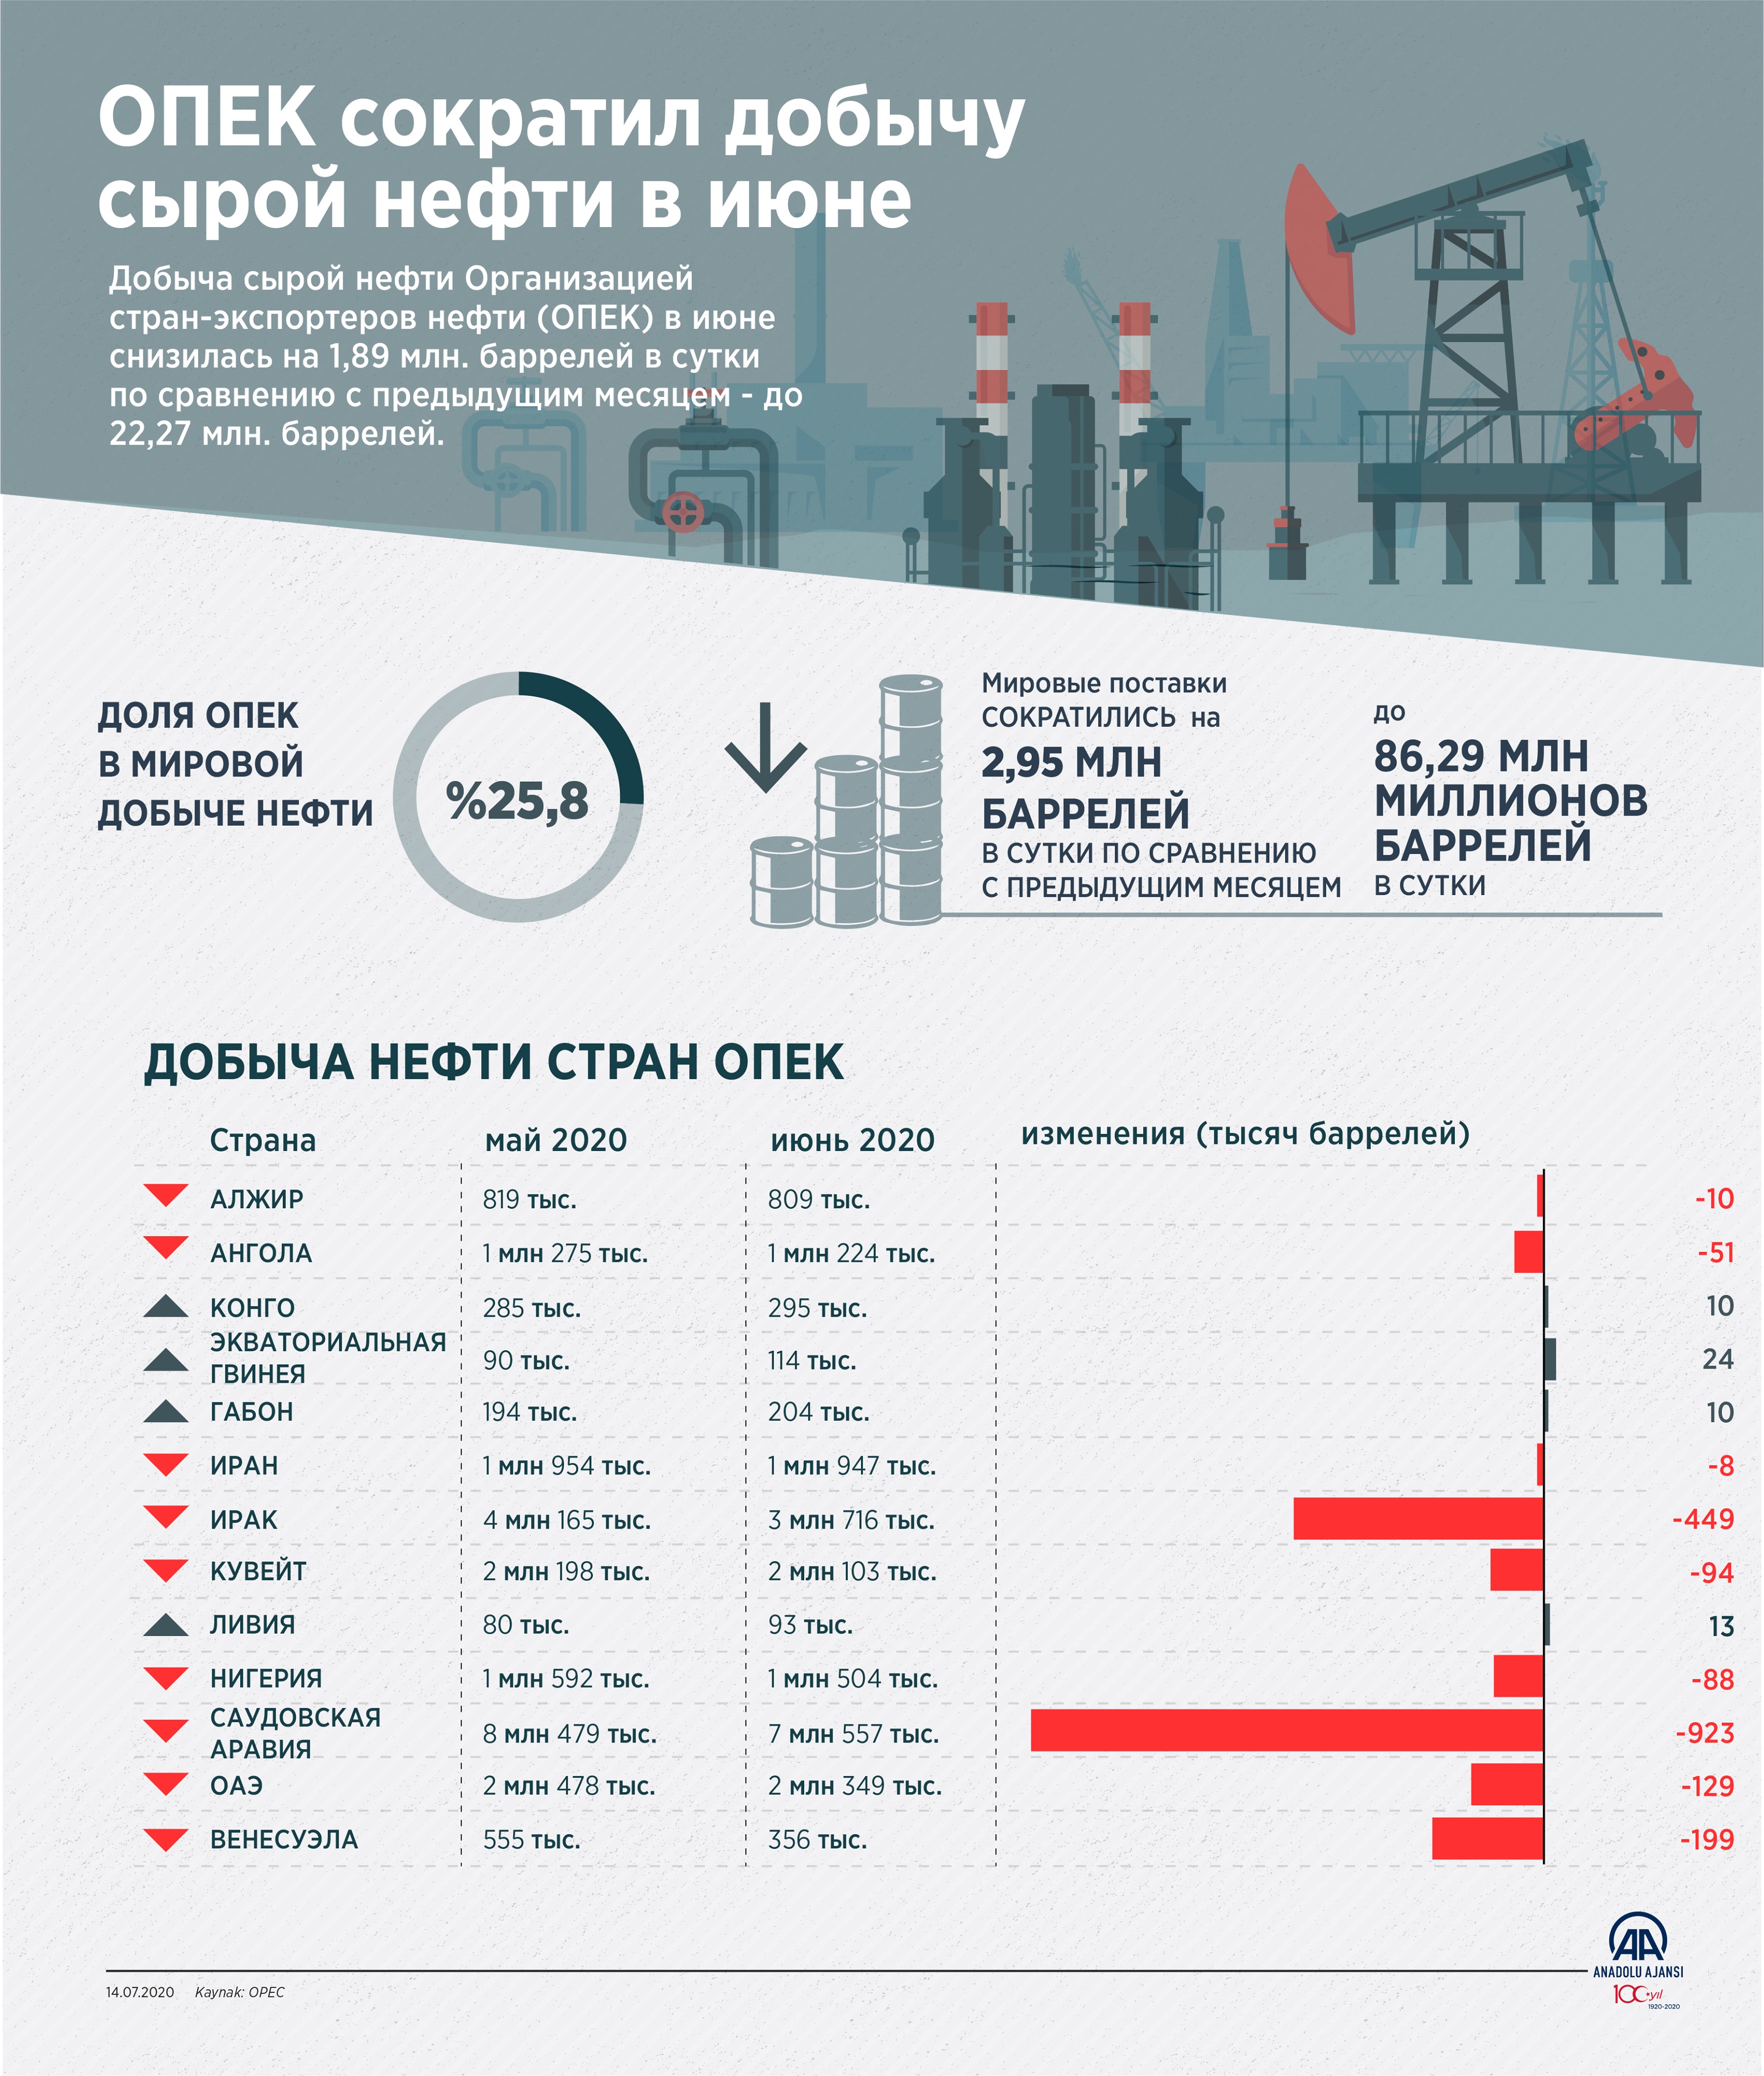 ОПЕК сократил добычу сырой нефти в июне